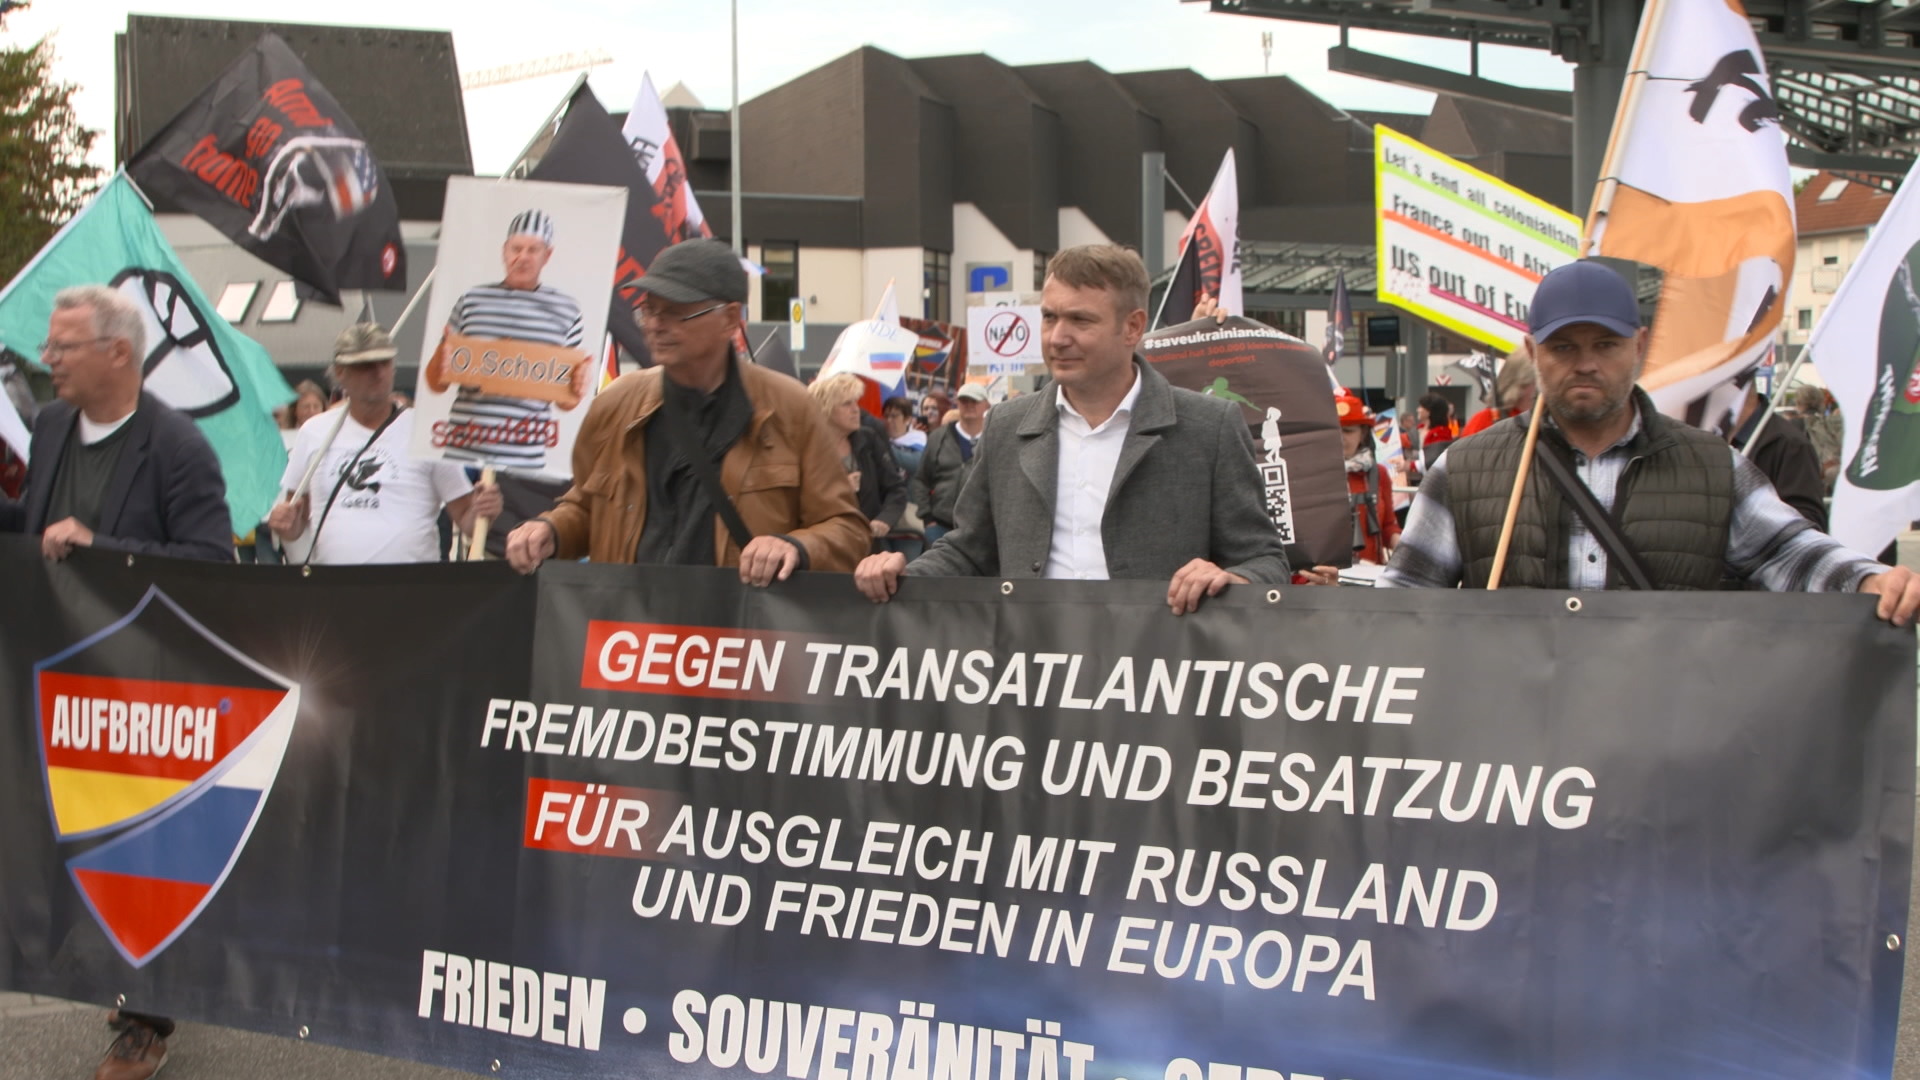 Anhänger und Mitglieder der Partei "Aufbruch Frieden-Souveränität-Gerechtigkeit" mit transparent auf einer Demo 